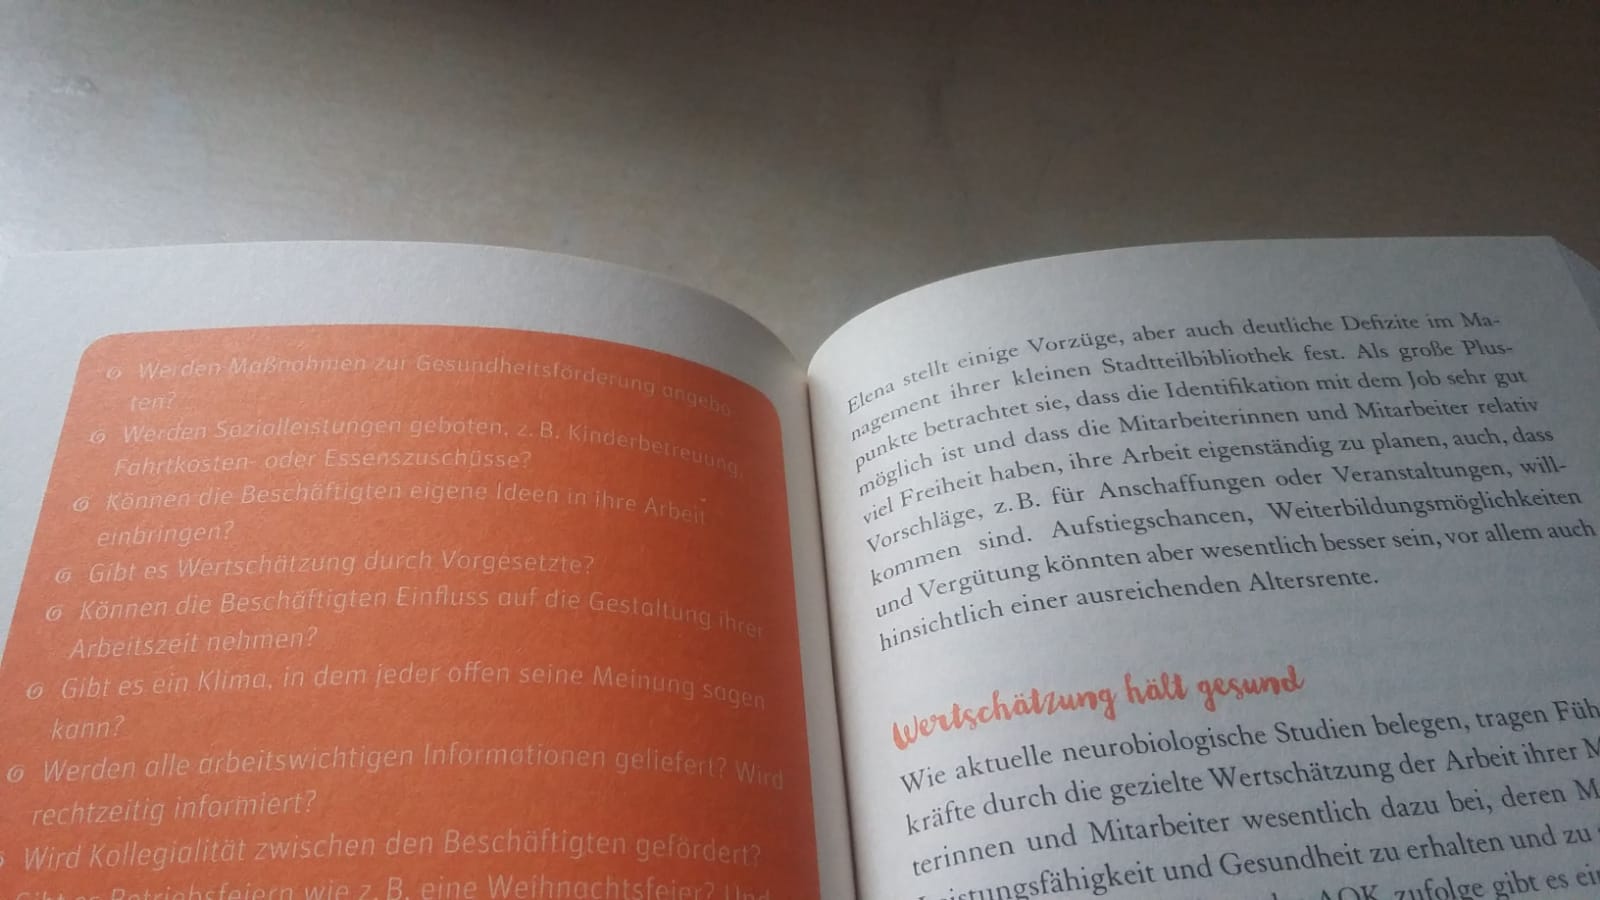 Auszug aus "Ich steh auf mich": Der Kontrast der orangefarbenen Kästen und der weißen Schrift ist schlecht lesbar. Foto: Kia Kahawa